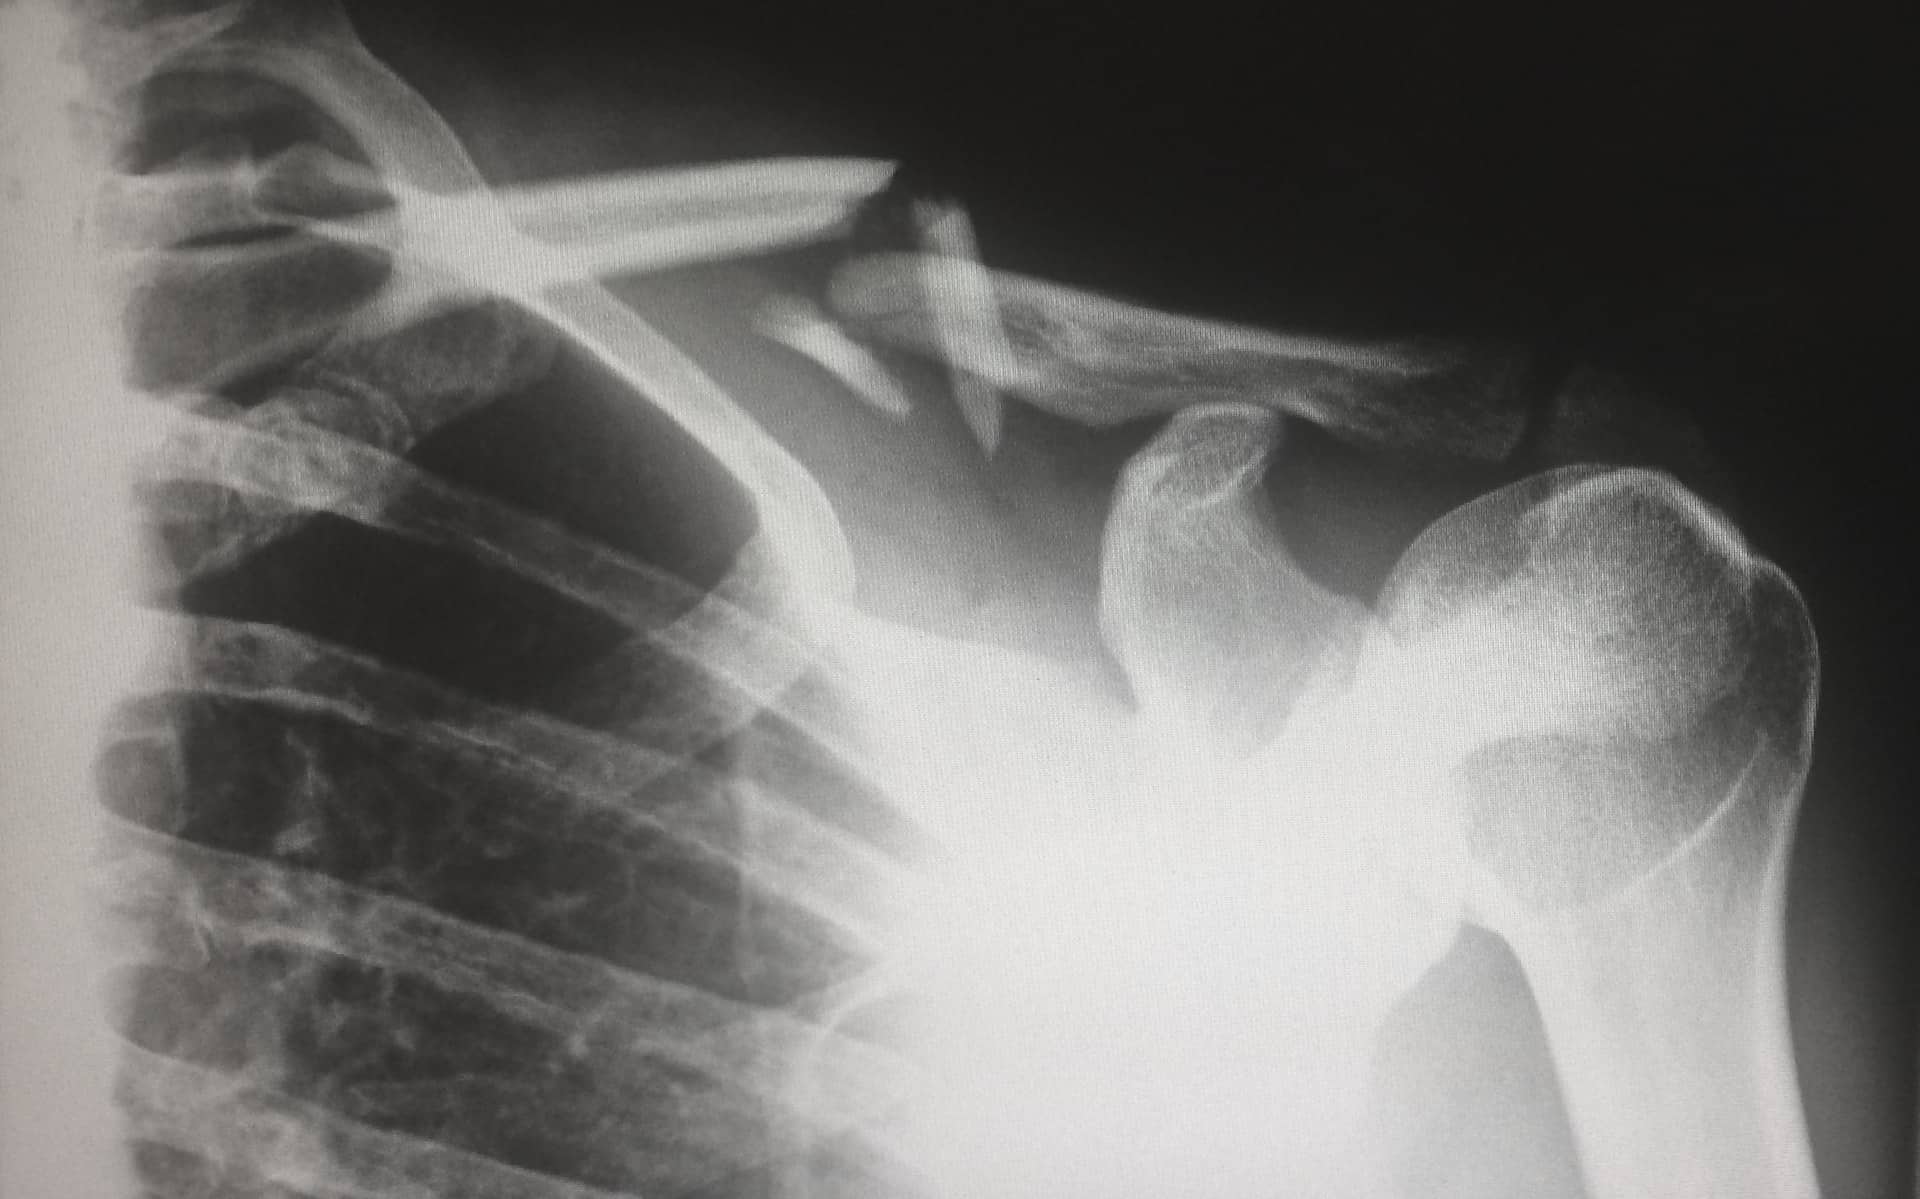 human x-ray of collar bone